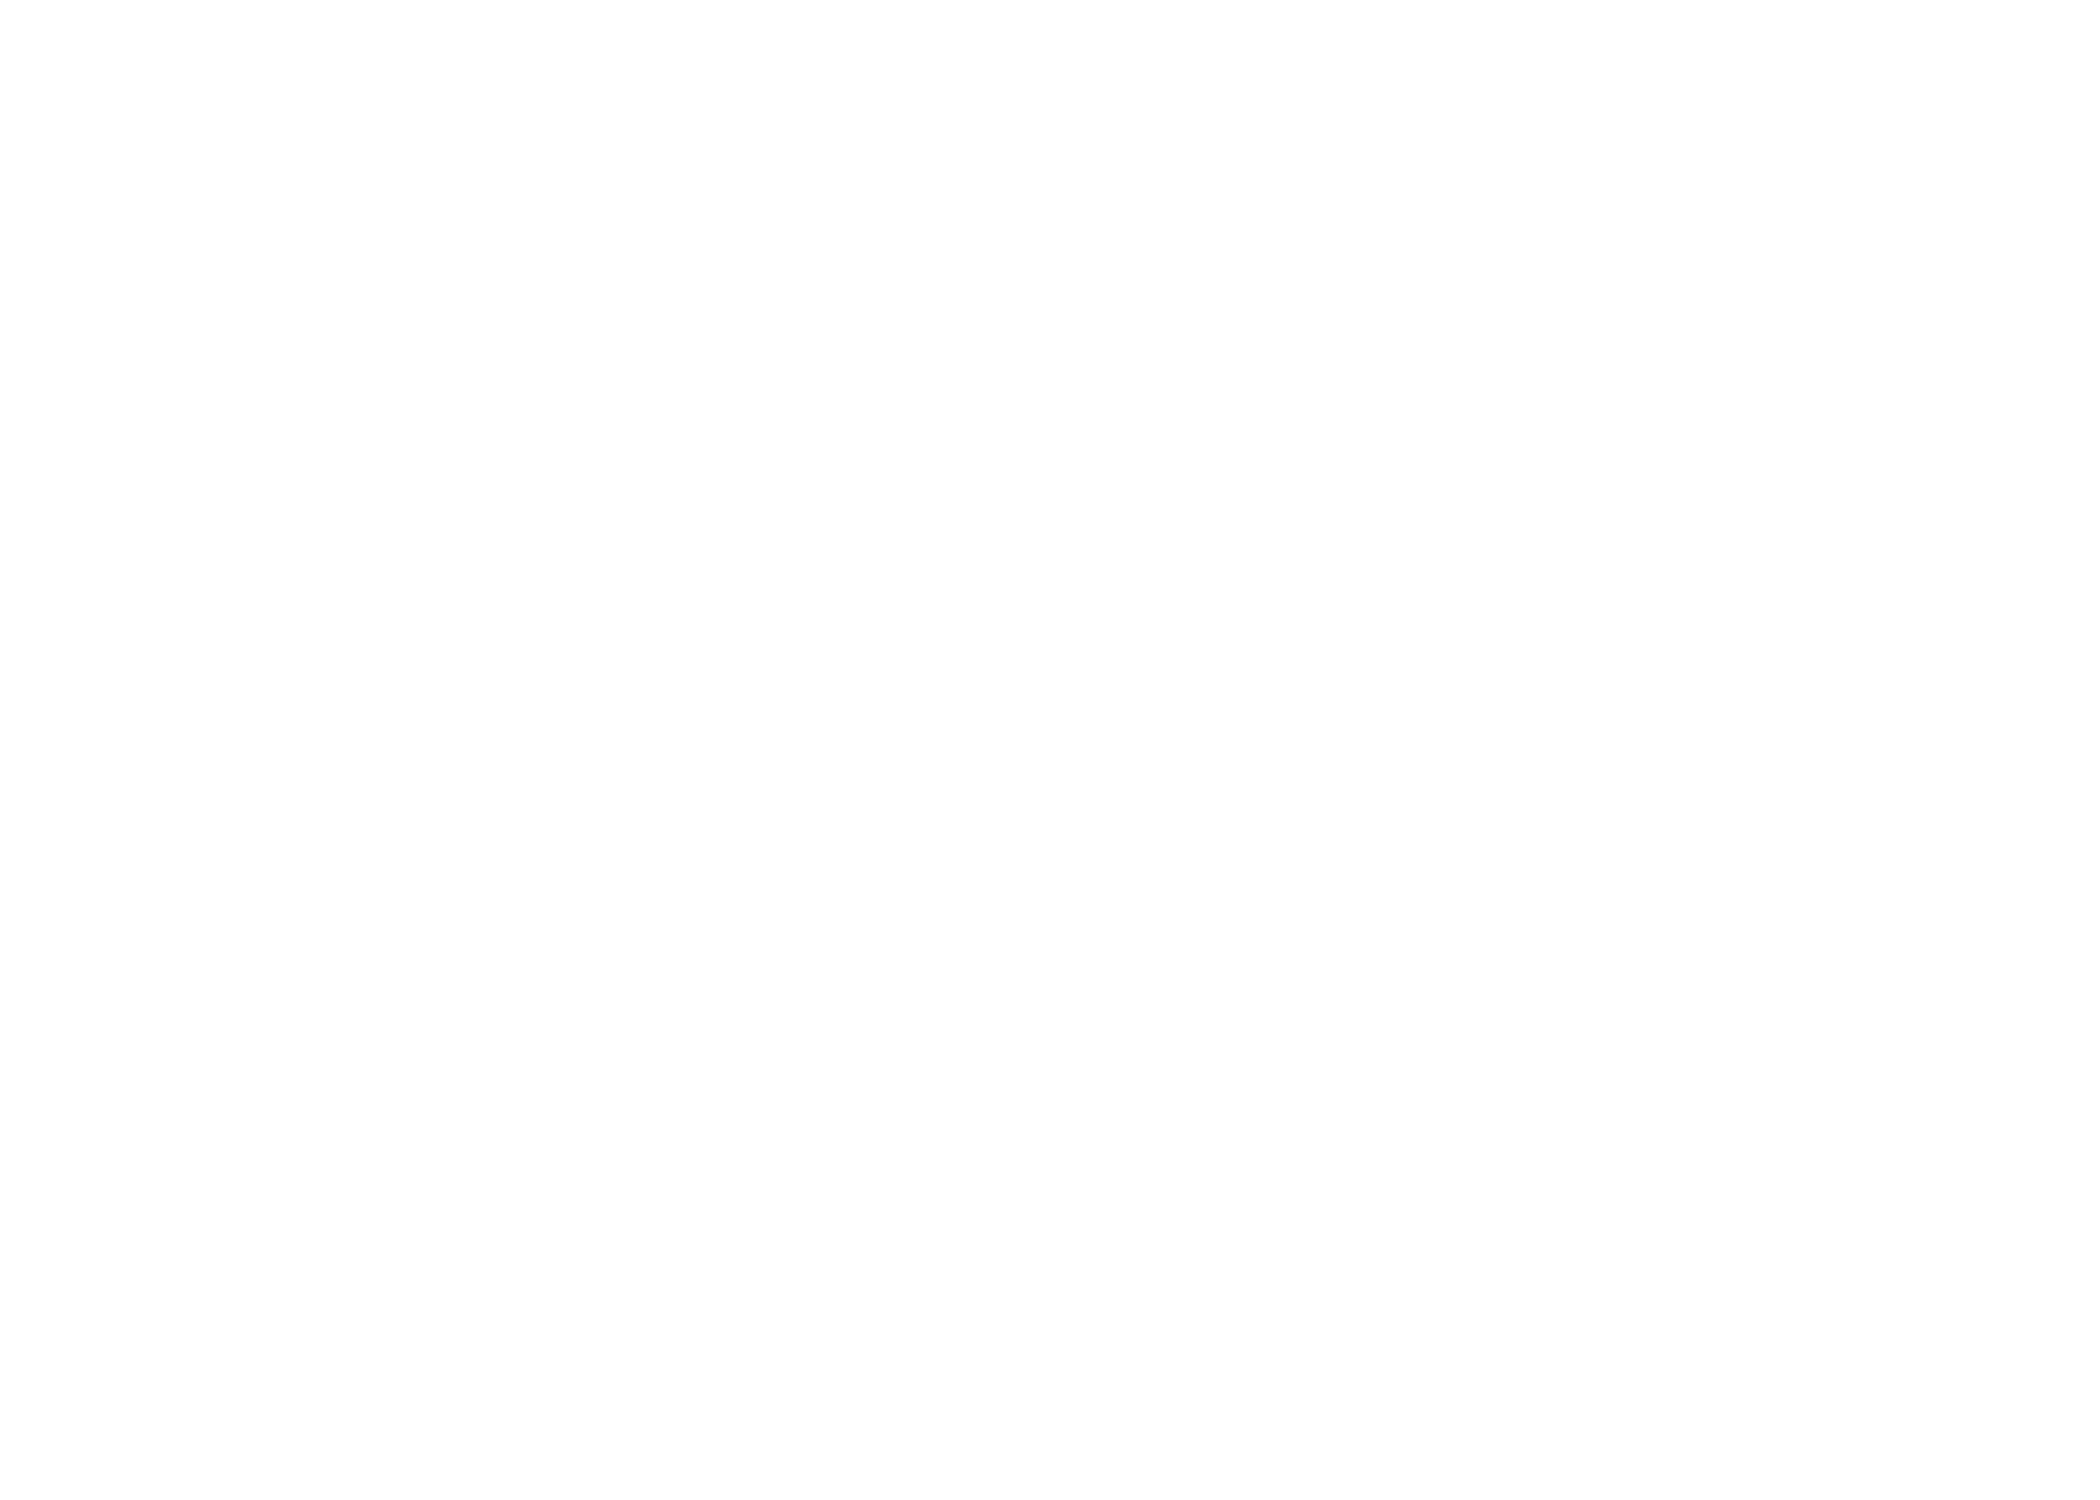 Amy McLaughlin | Award Winning Austin Documentary Photographer + Filmmaker